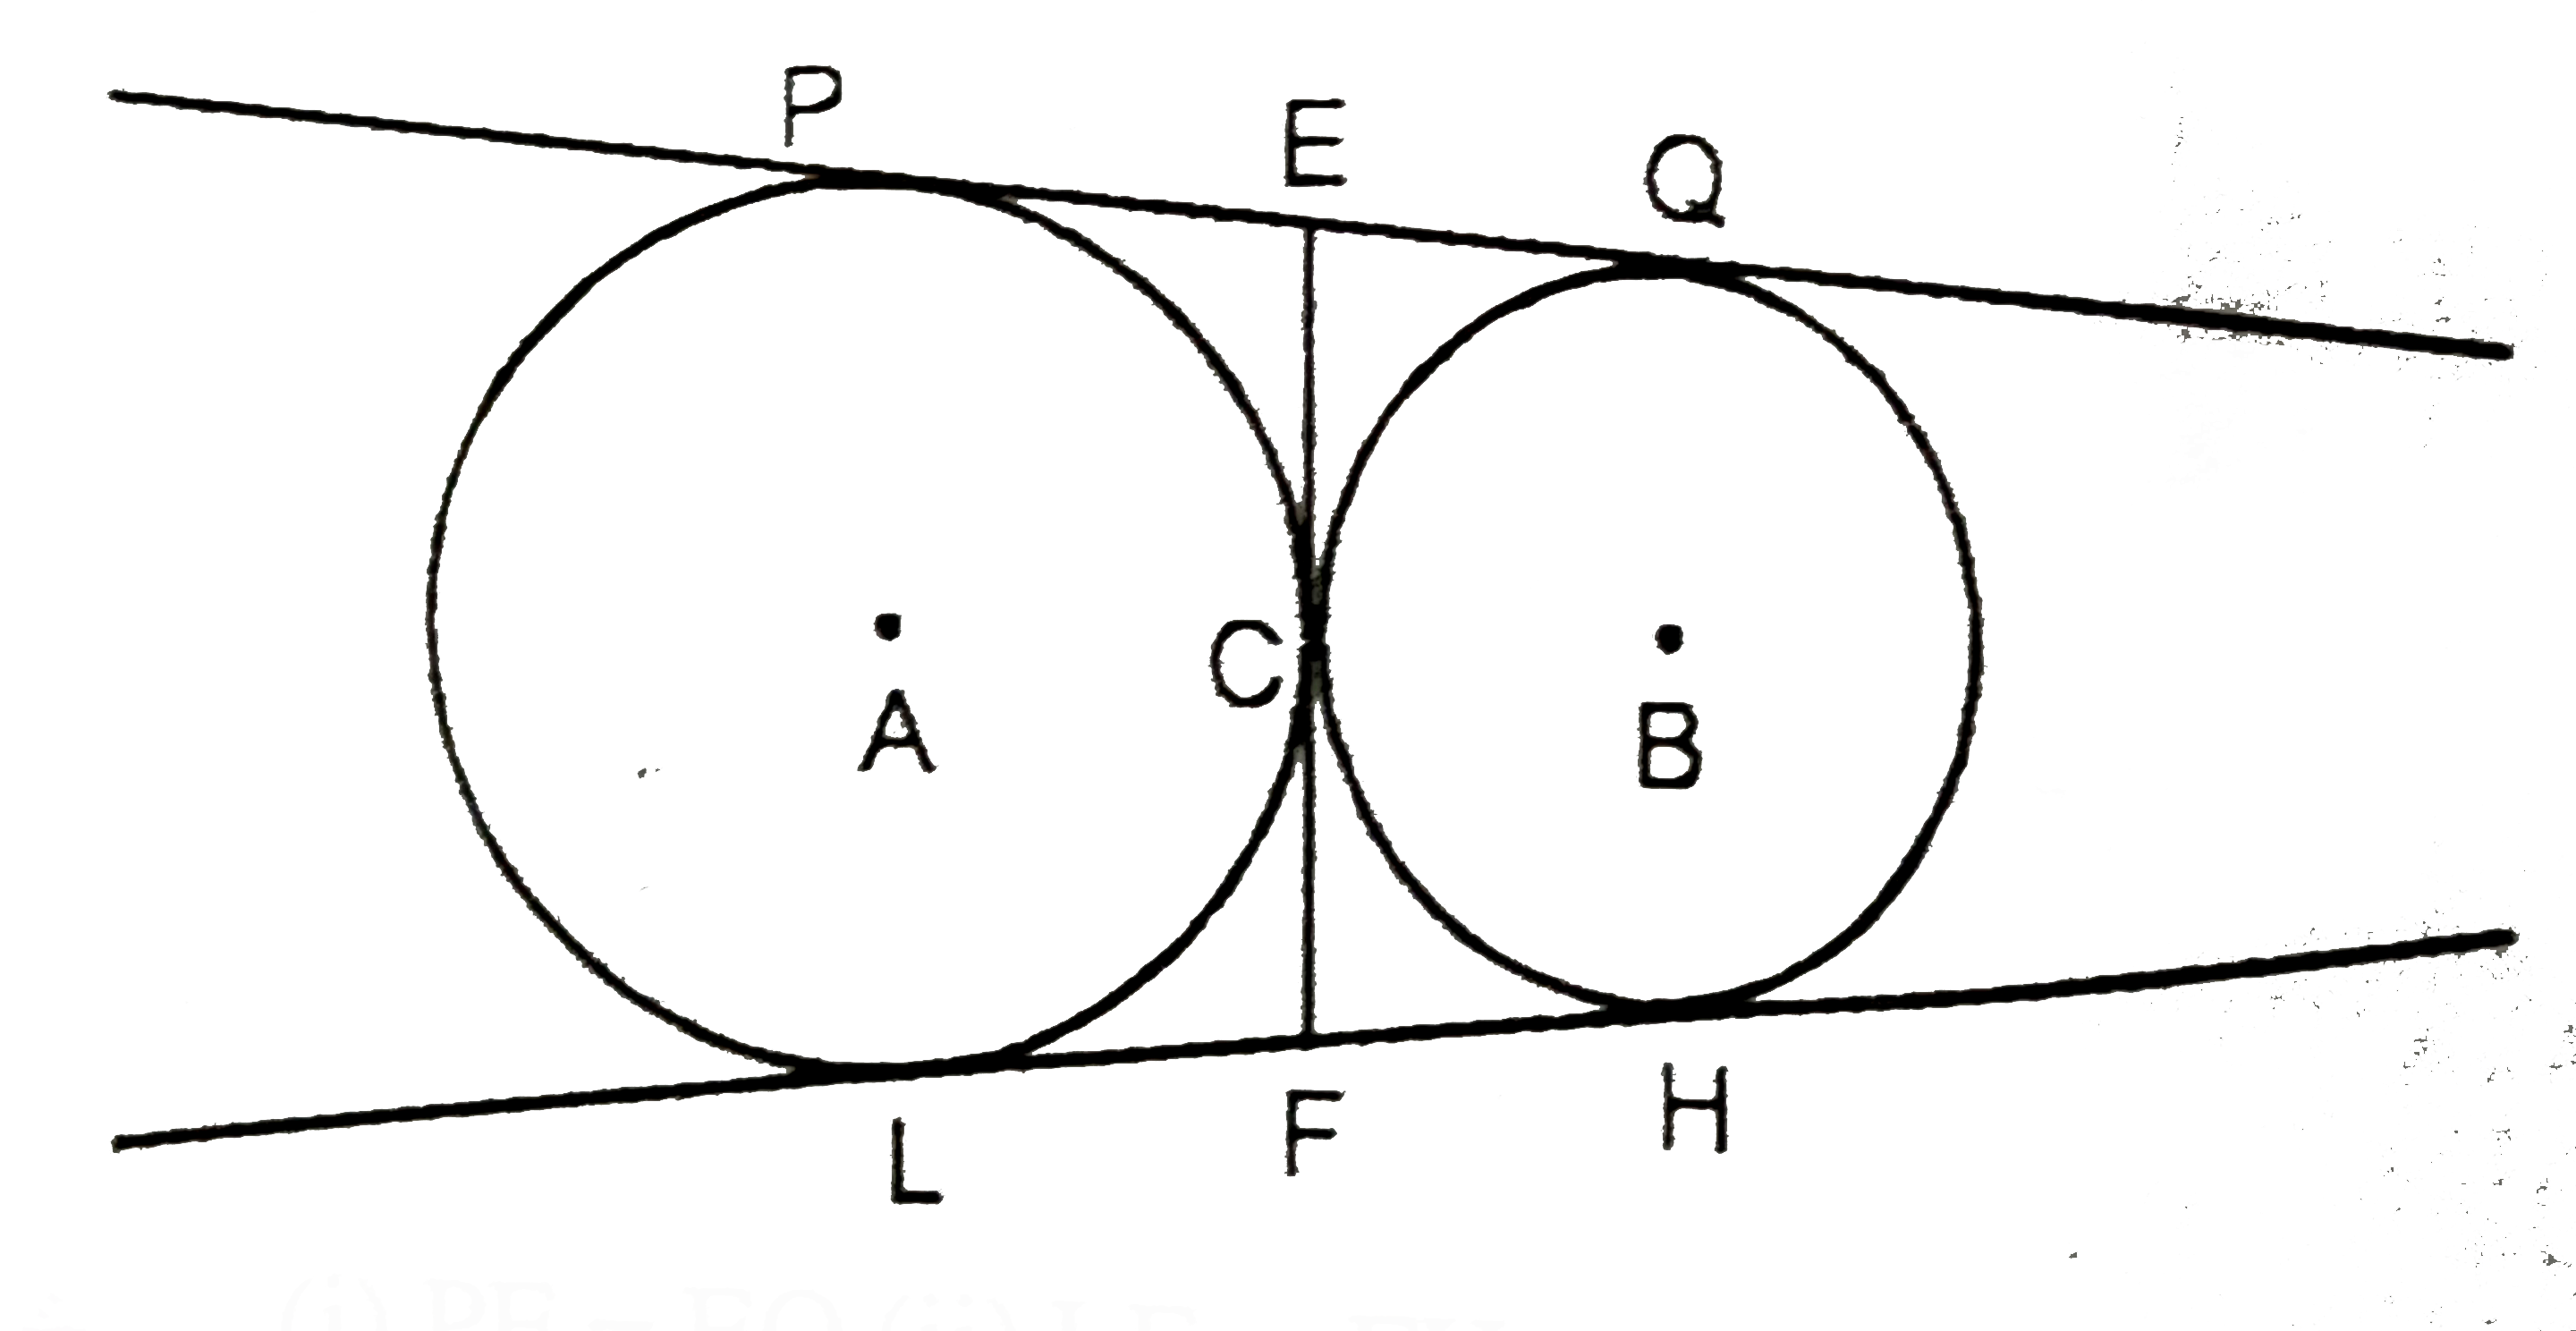 चित्र में दो वृत्त एक-दूसरे को बाह्यतः: C पर स्पर्श करते हैं, सिद्ध कीजिये की उभनिष्ठ स्पर्श रेखा,  अन्य दो स्पर्श रेखाओं को समद्विभाजित करती हैं।